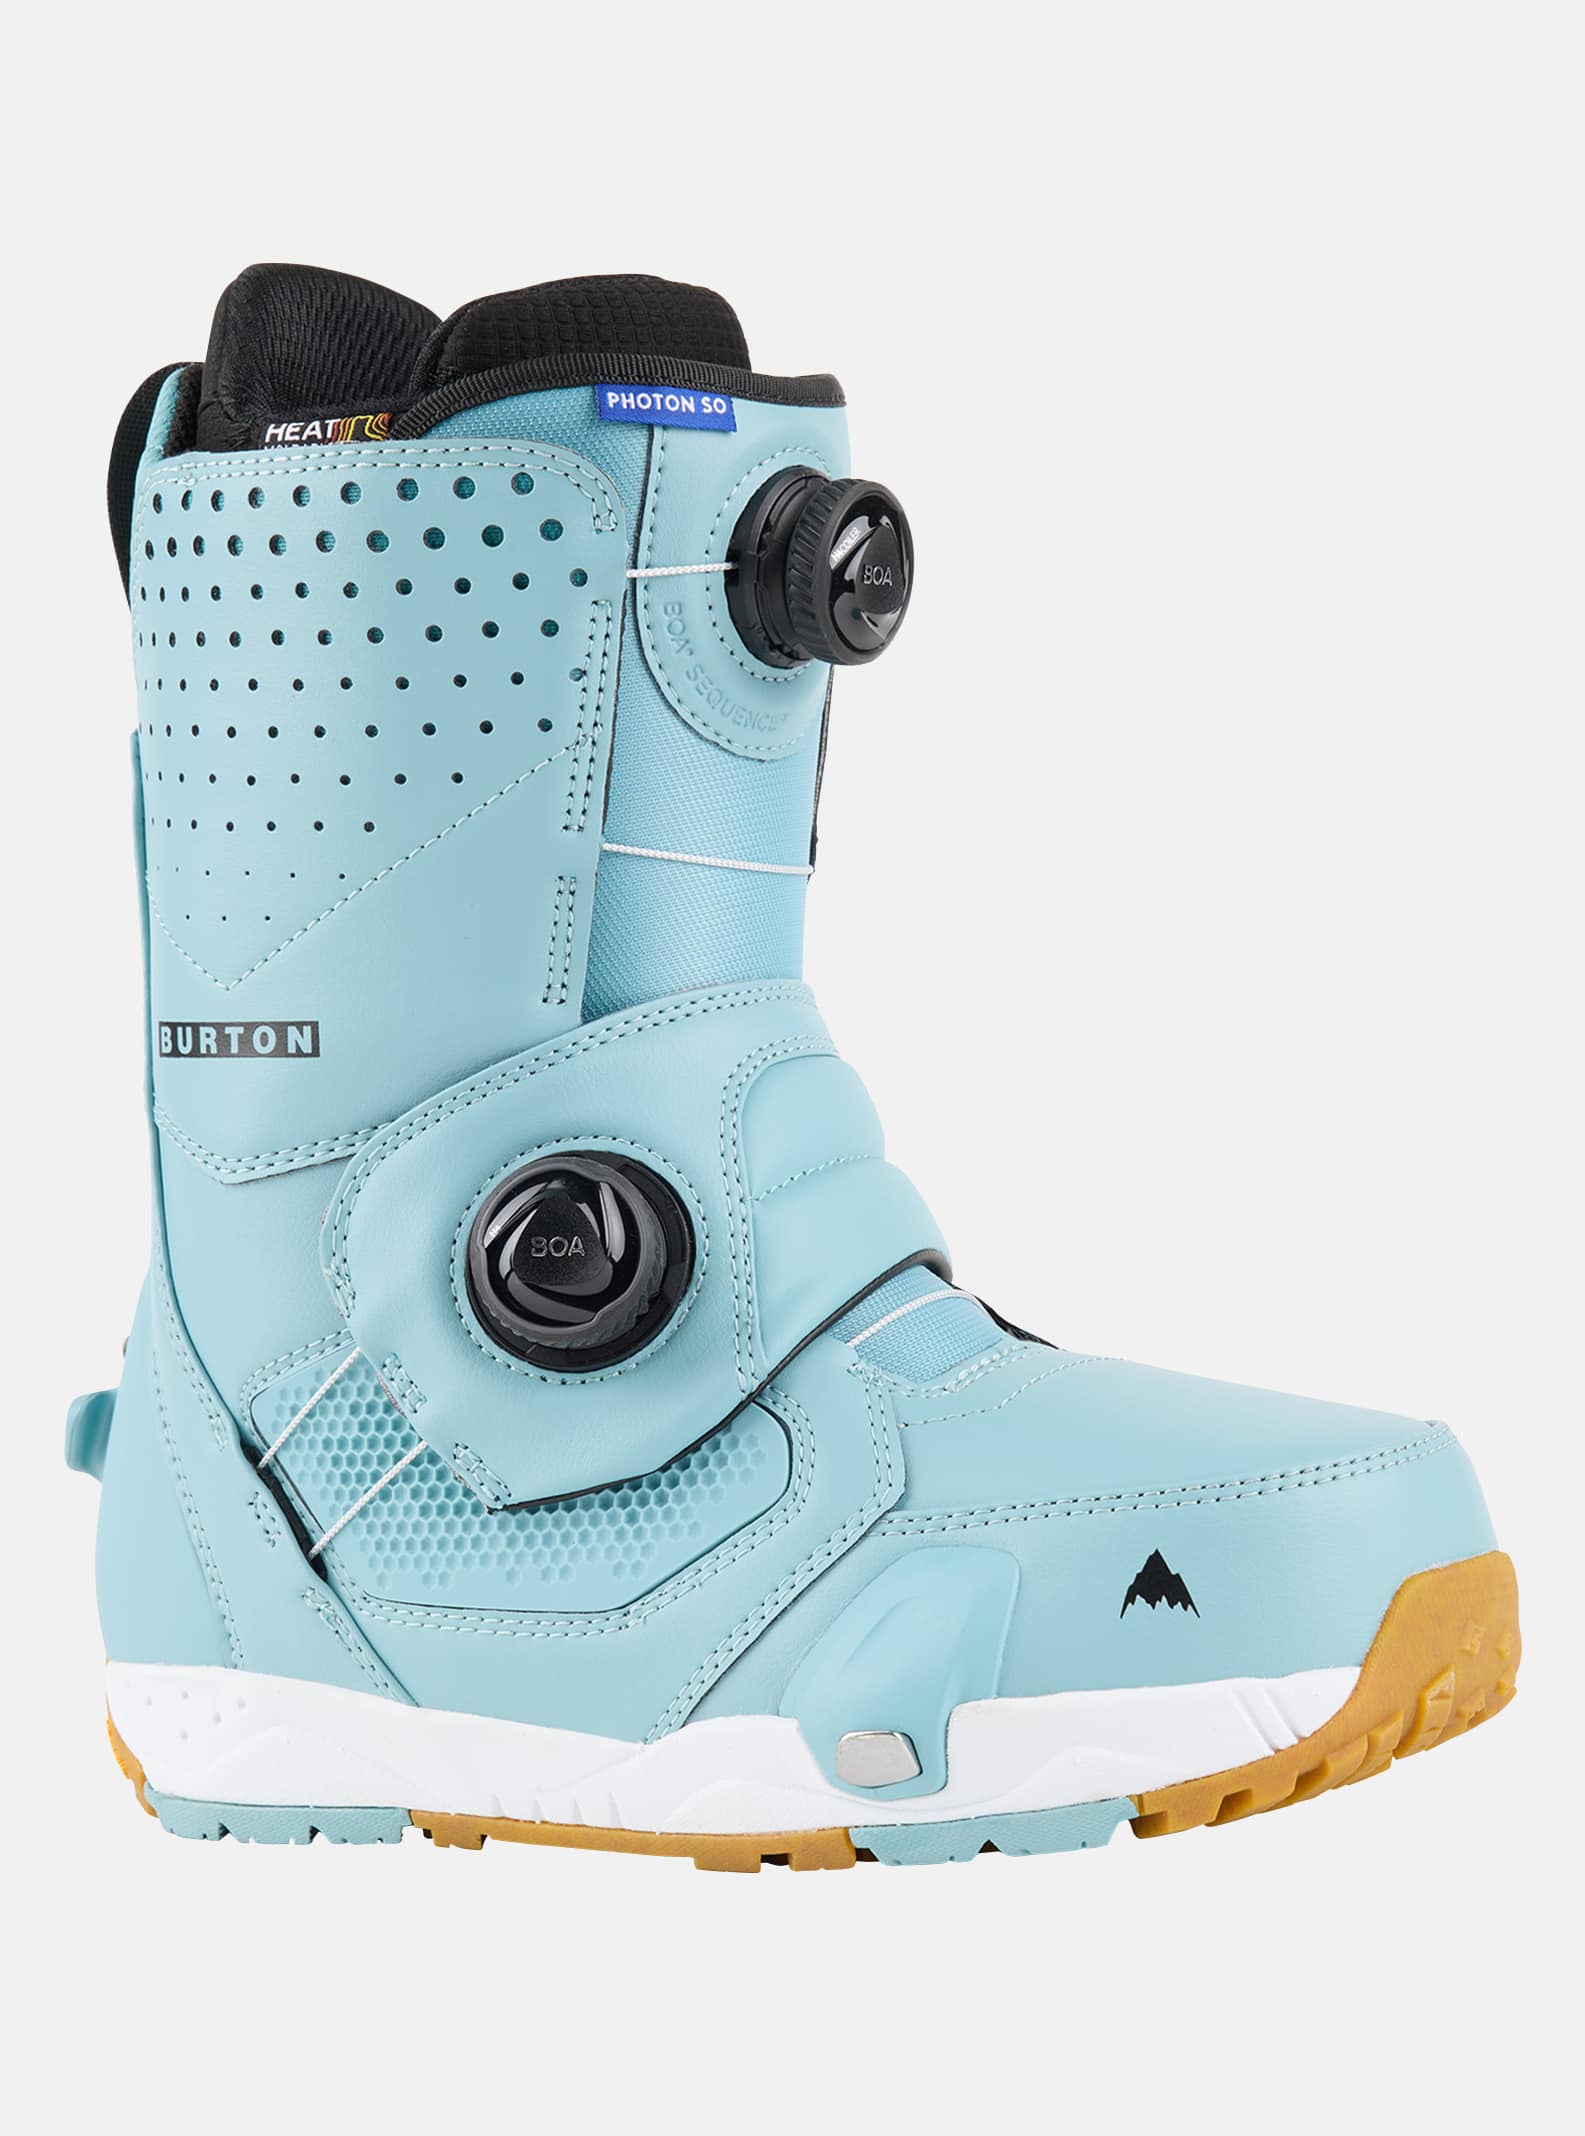 Burton - Boots de snowboard Photon Step On® larges homme, Rock Lichen, 105